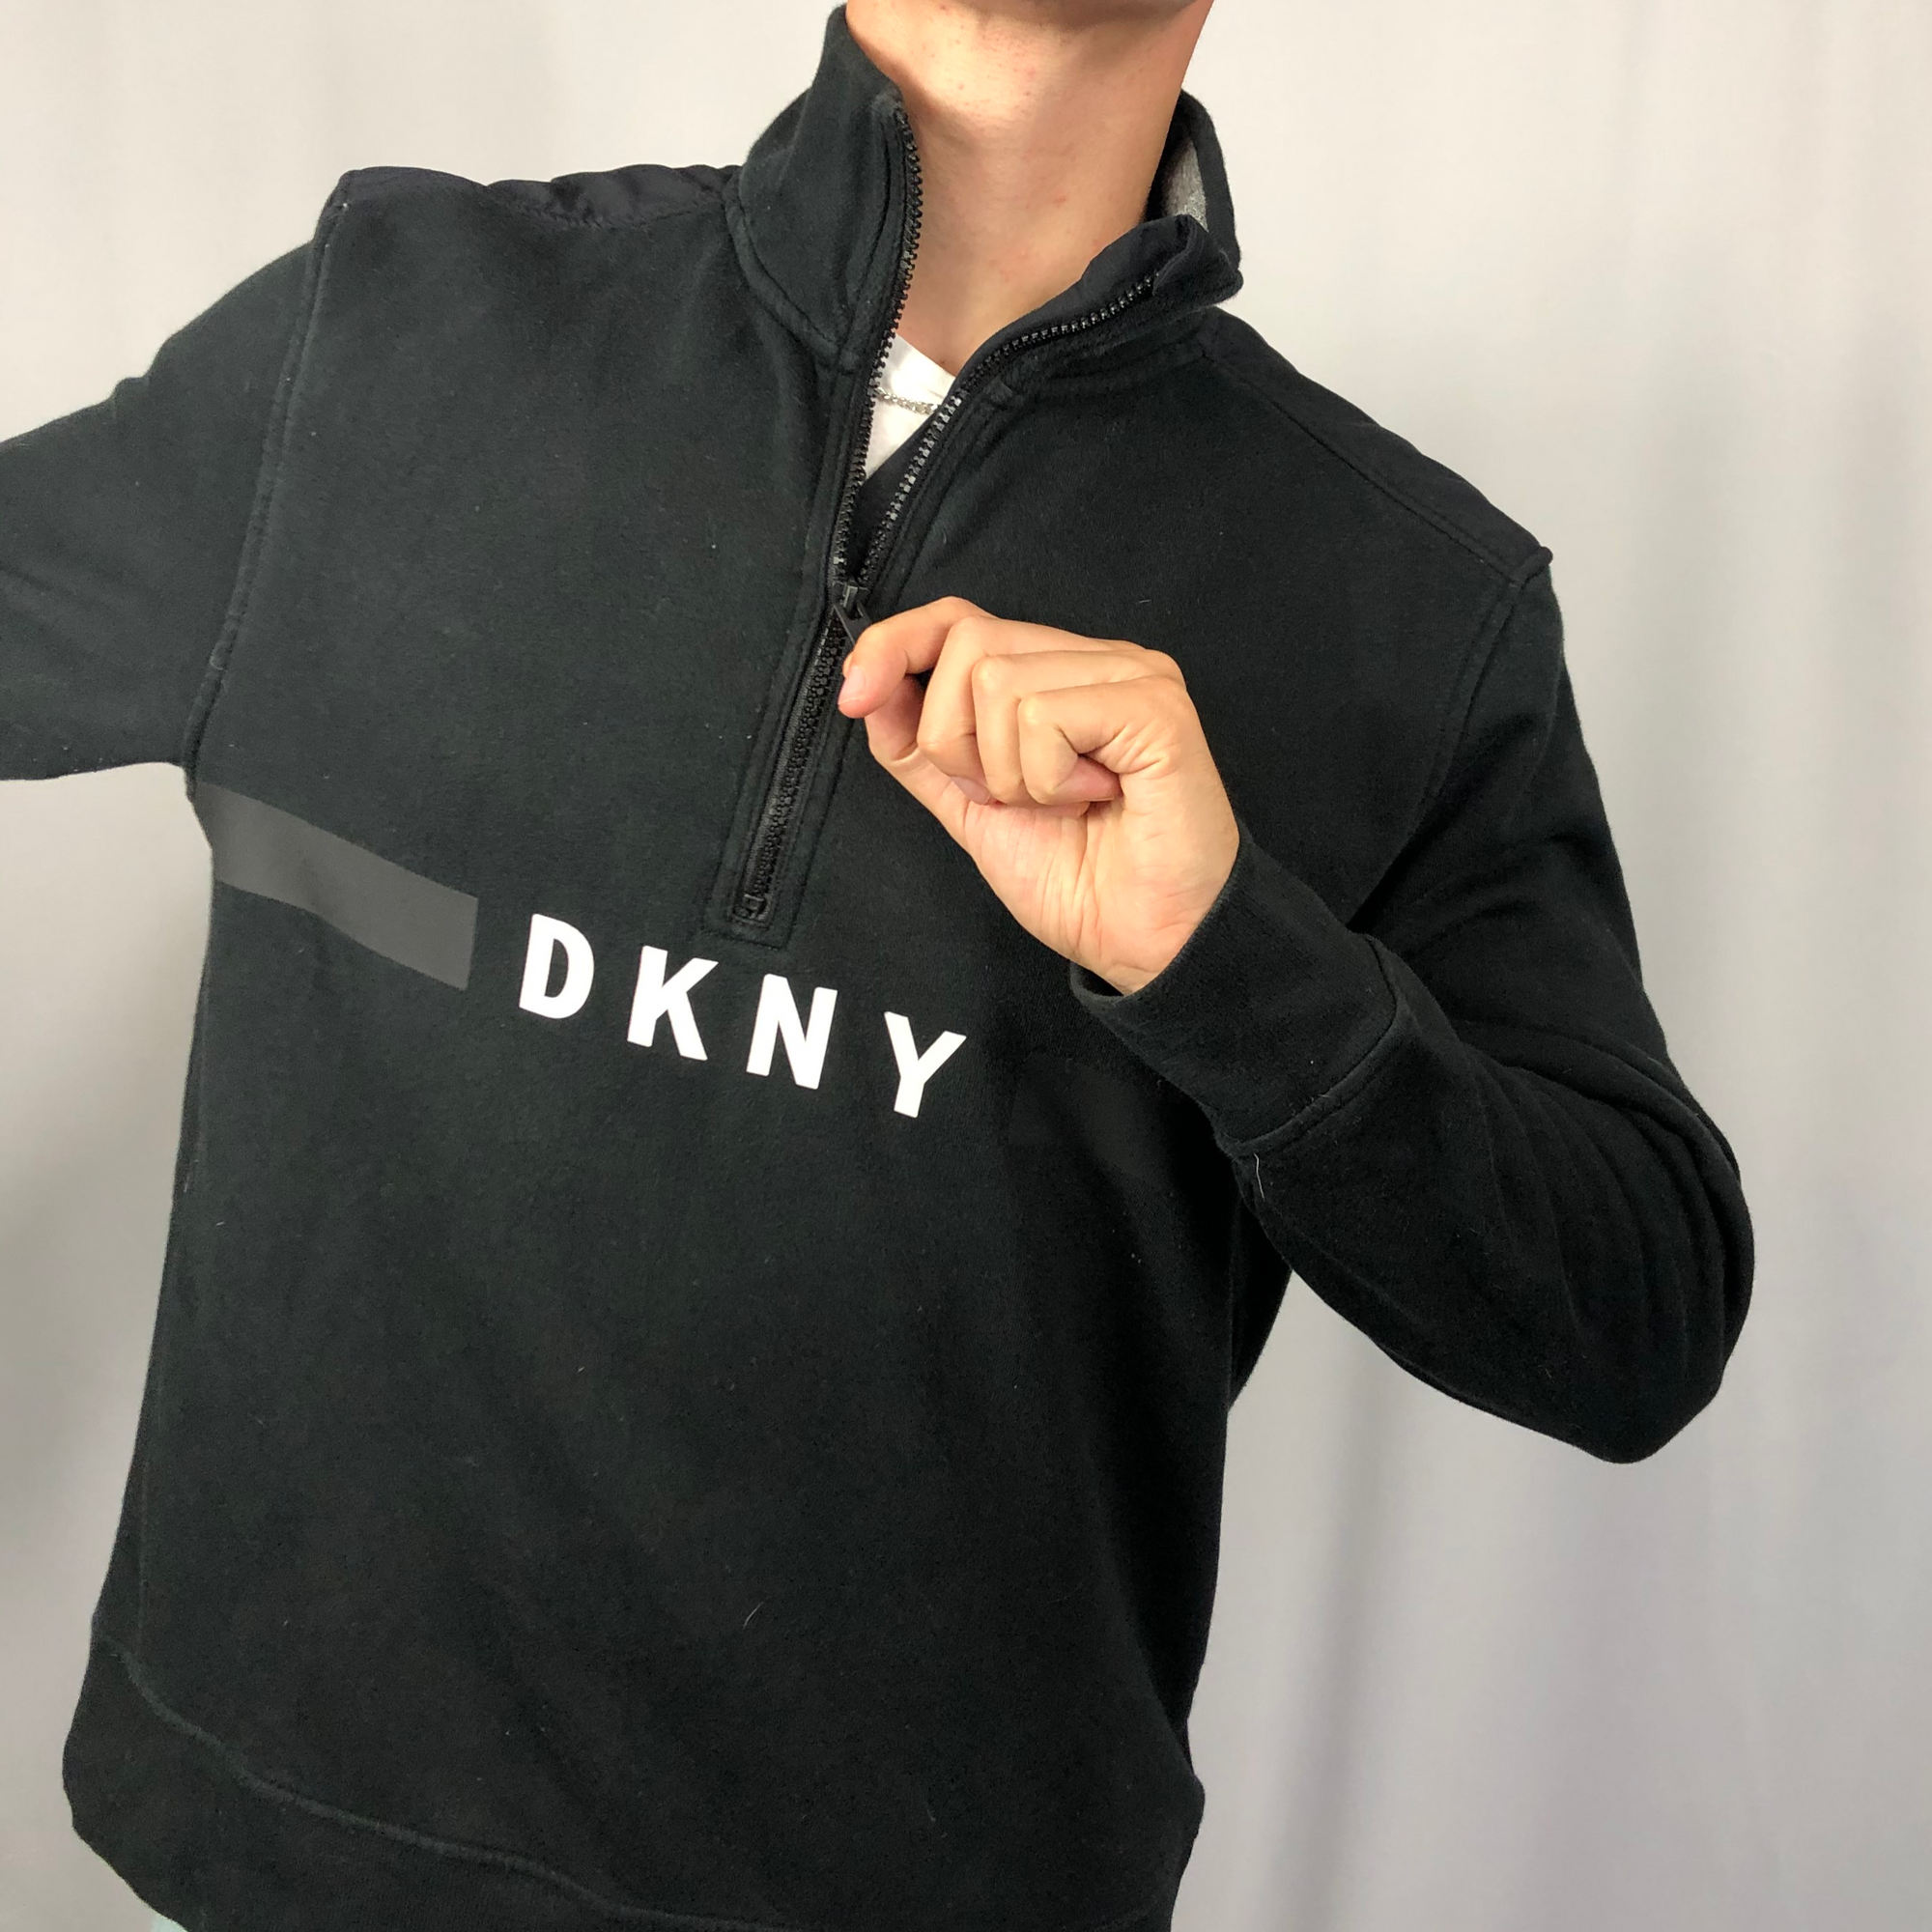 DKNY Zip Sweatshirt in Black - Large - Vintique Clothing